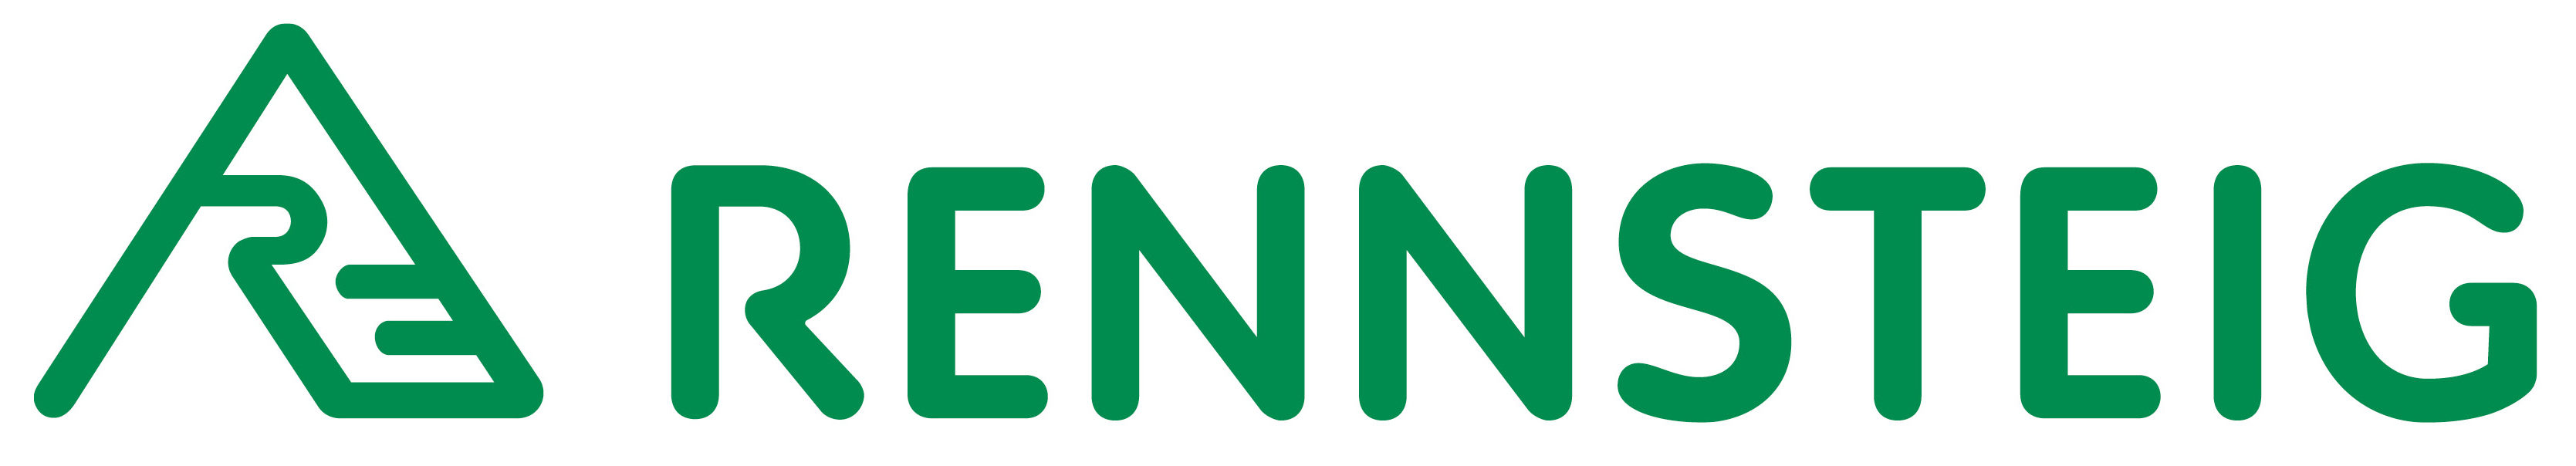 Логотип бренда RENNSTEIG